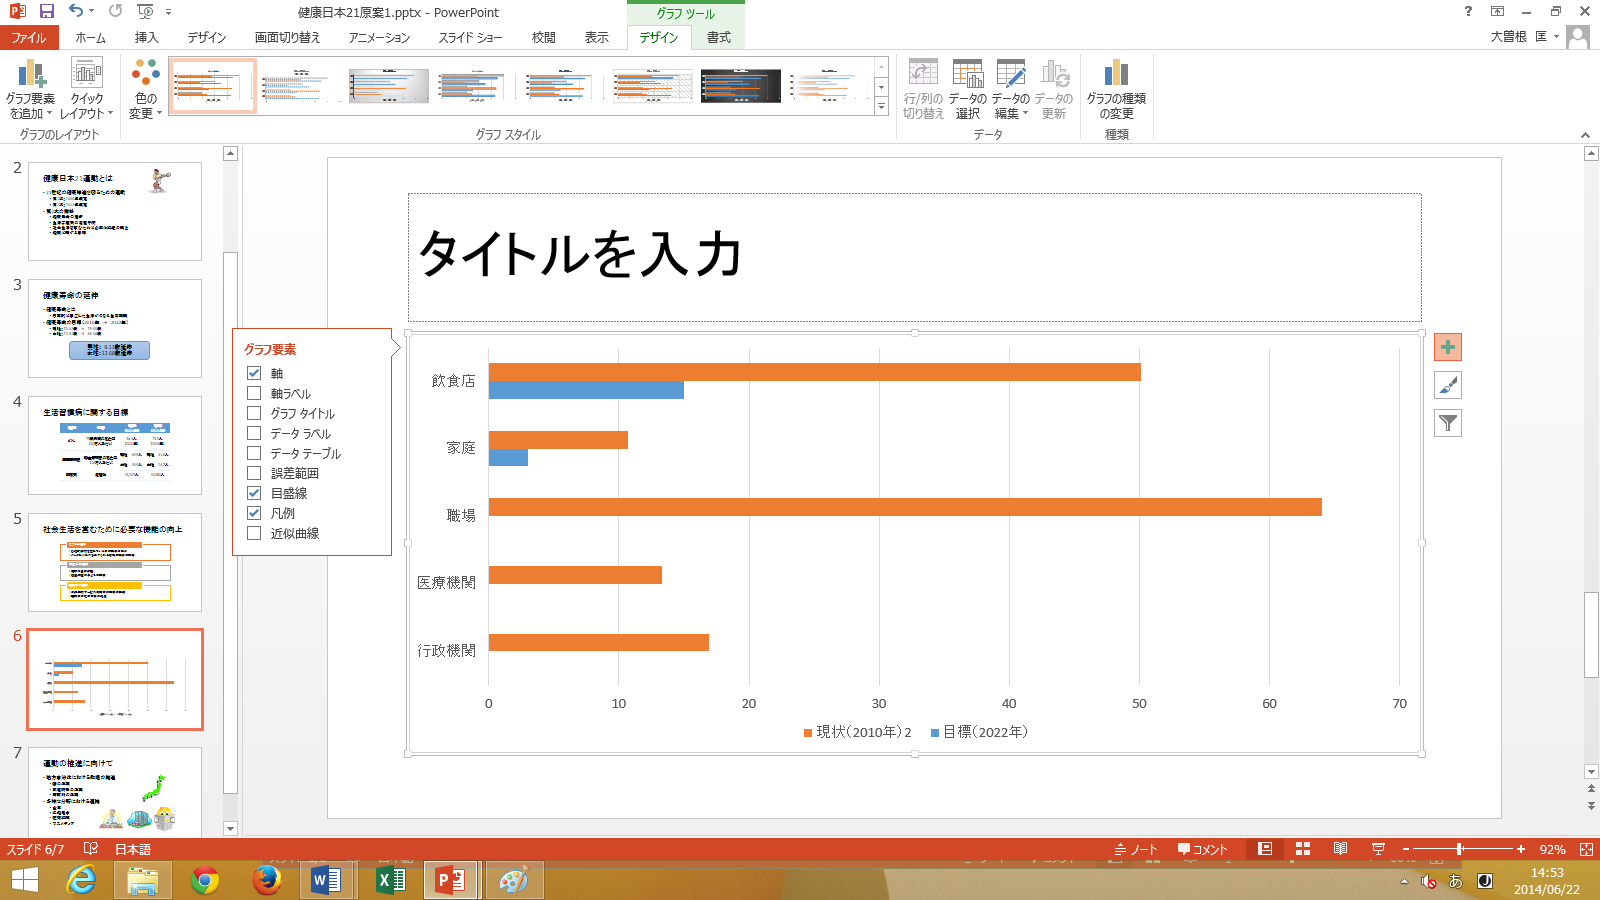 1-32 (5) Excel 形 式 のシートにデータを 入 力 する 毎 に,PowerPoint のグラフが 変 化 していきます.